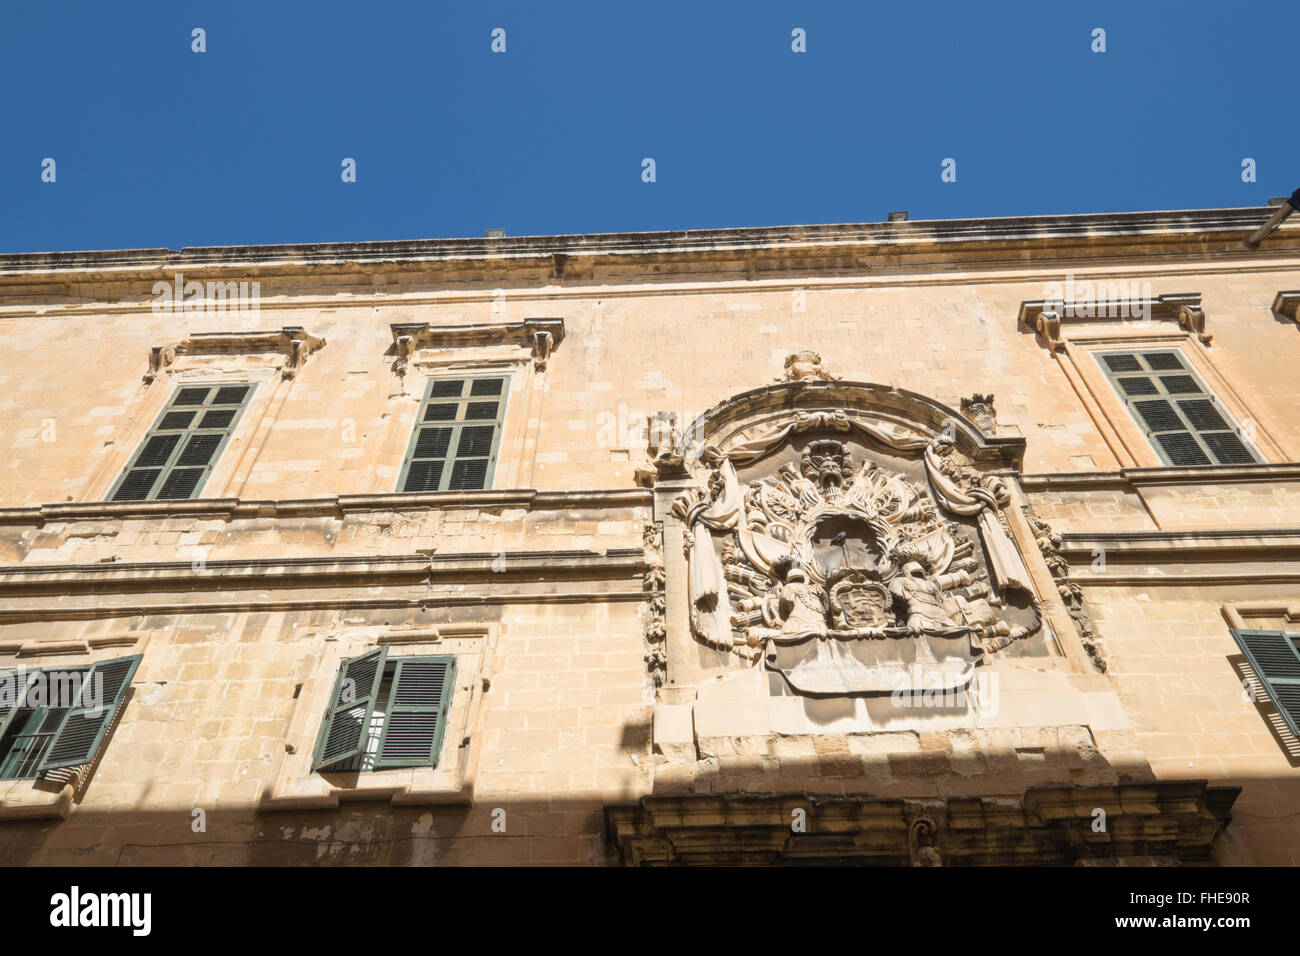 Malta Tourist Office building in Valletta,Malta Stock Photo - Alamy